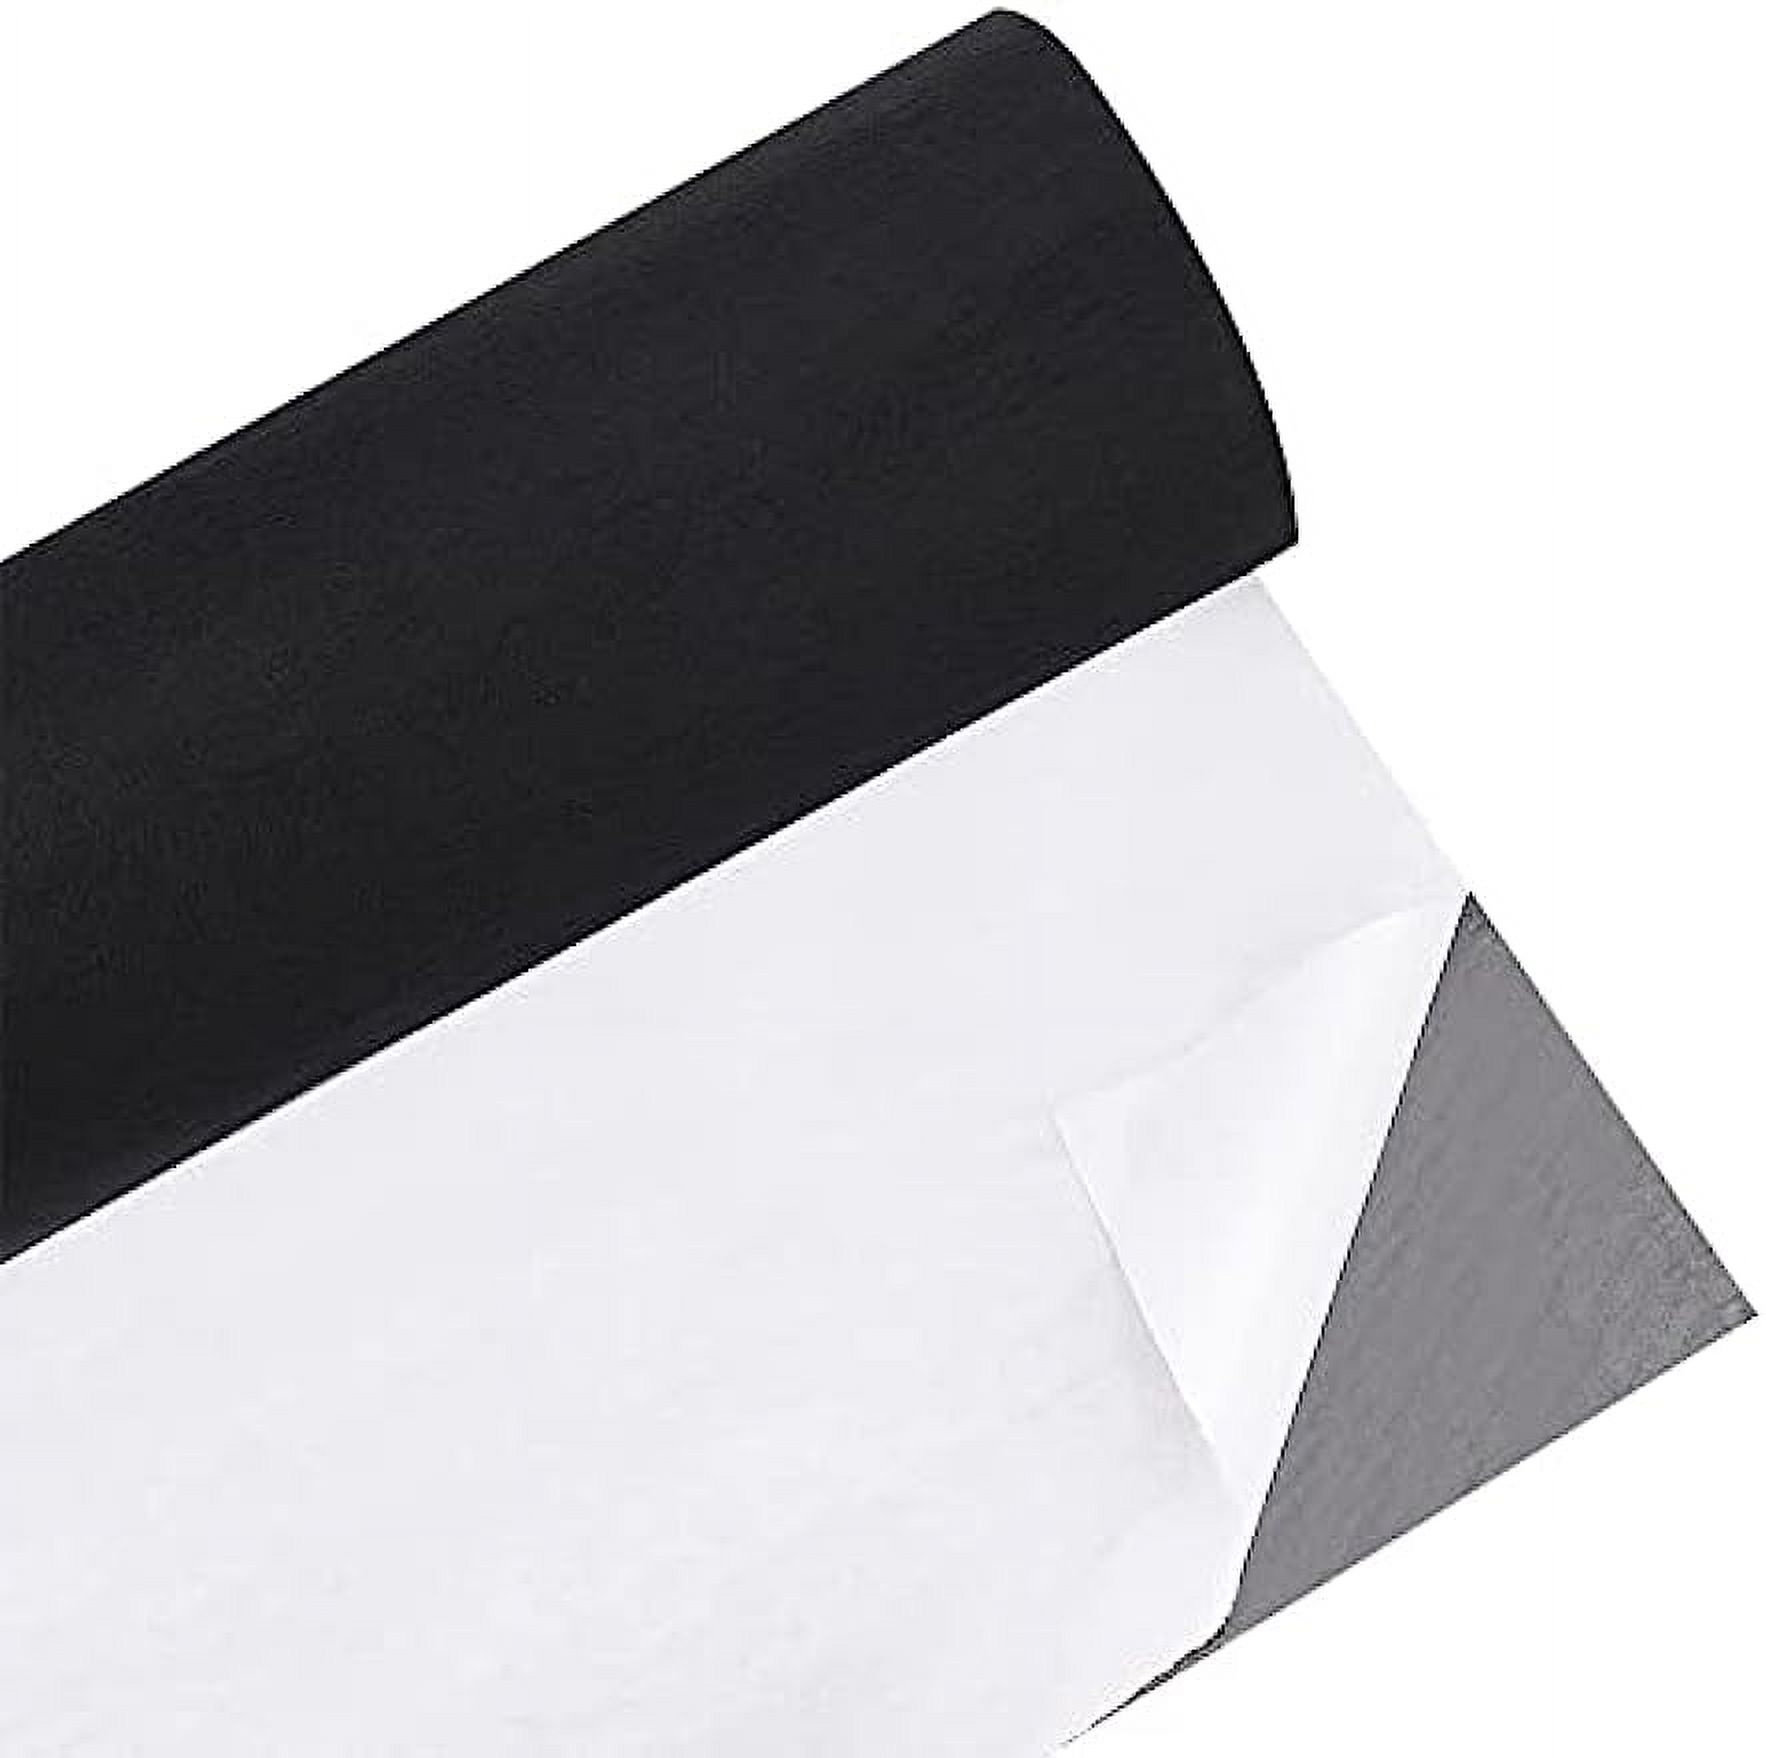 1Sheet Adhesive Felt Fabric Large Adhesive Felt Shelf Liner Pad Black Sticky  Back Roll 